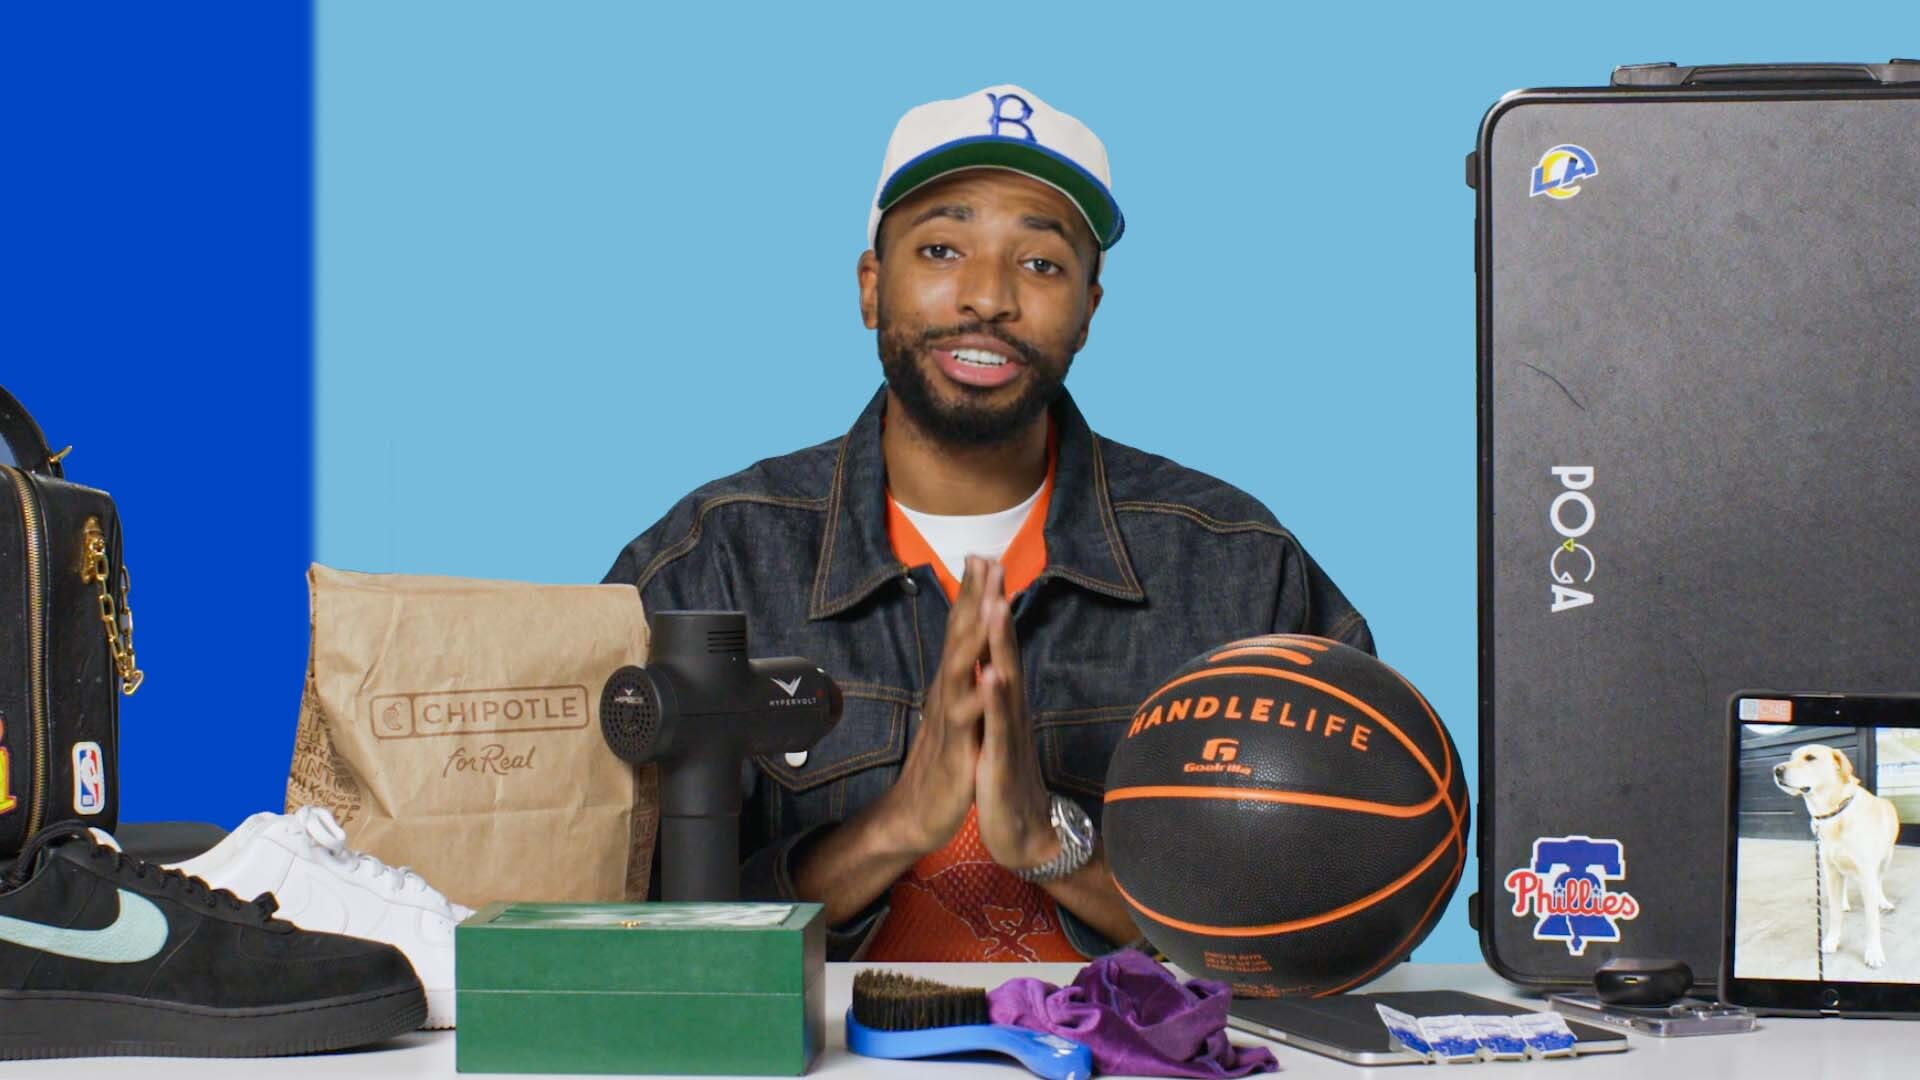 PS5 na maleta: estrela da NBA mostra solução “portátil” para jogar quando está viajando